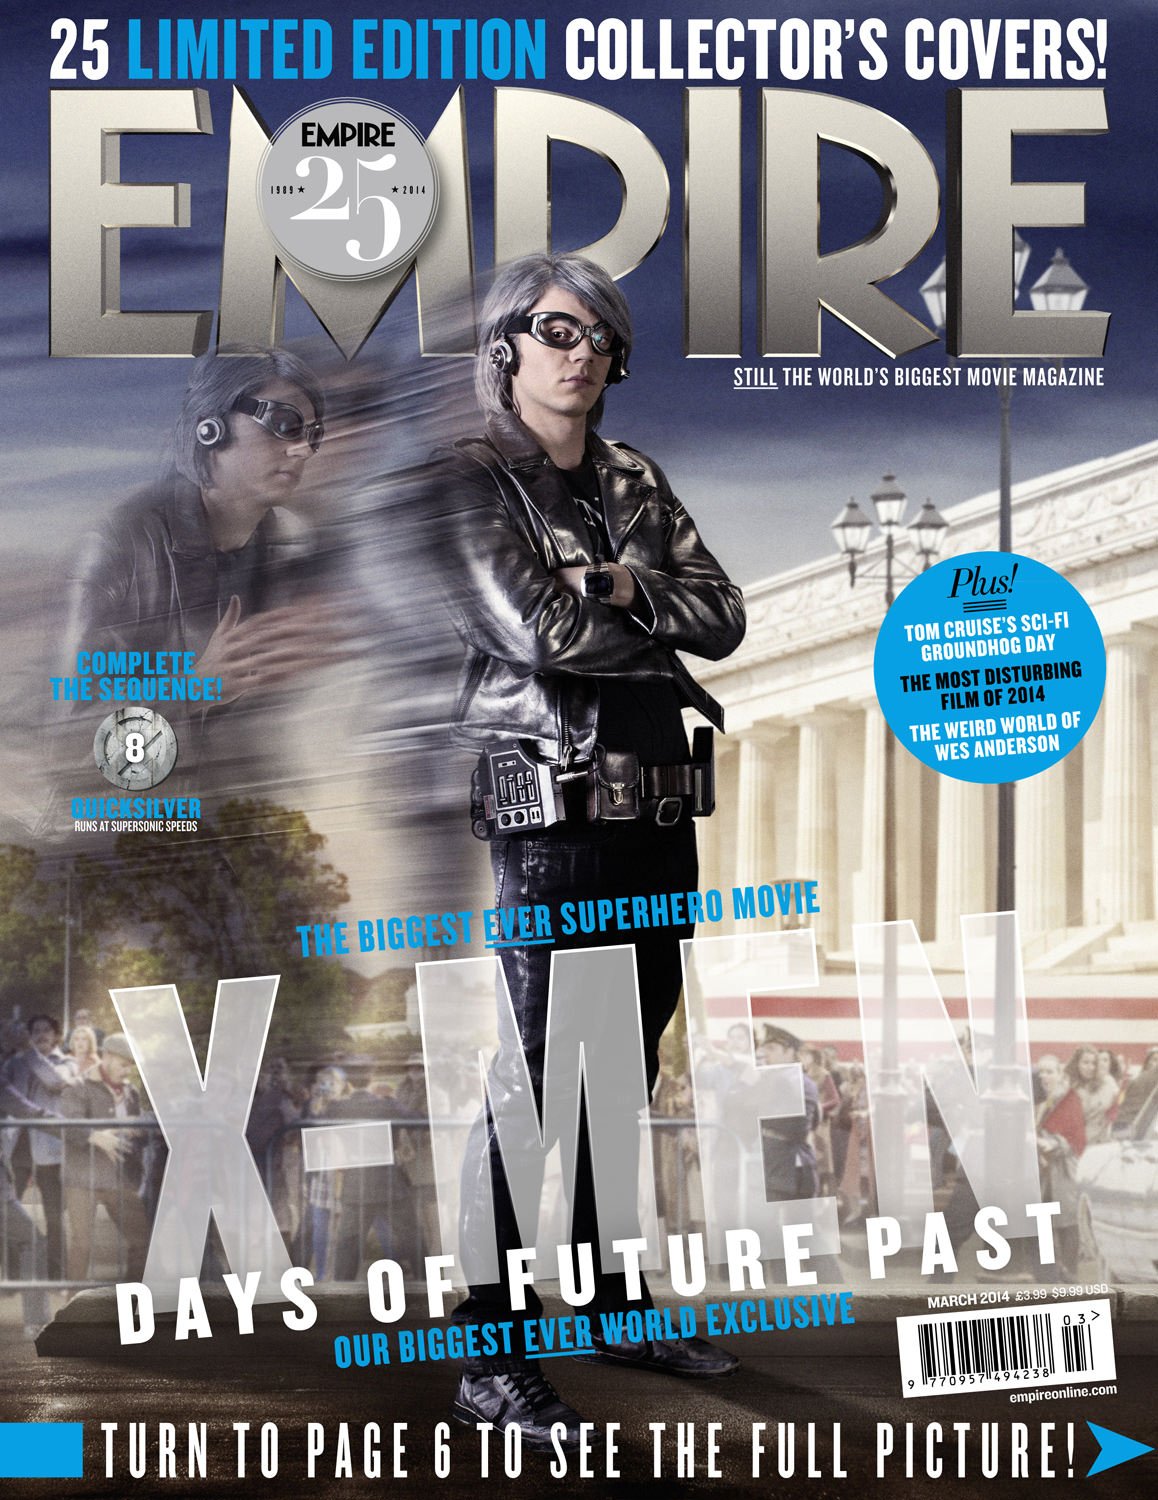 X-Men: Days Of Future Past, Empire cover 08 Quicksilver